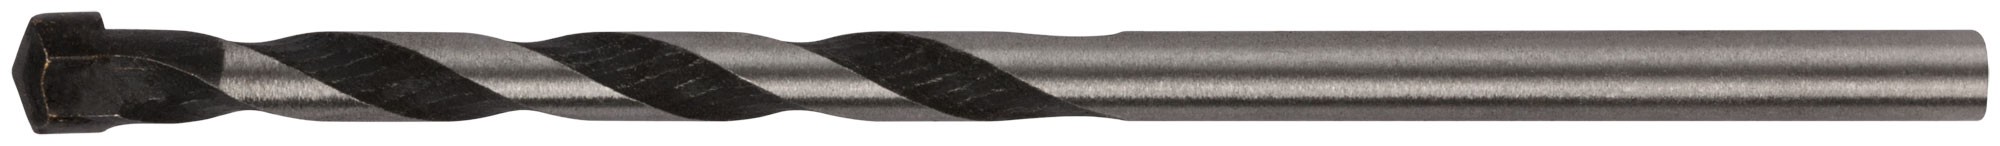 Сверло победитовое ударное (для бетона, камня, кирпича) Профи, цилиндрический хвостовик  5х85 мм